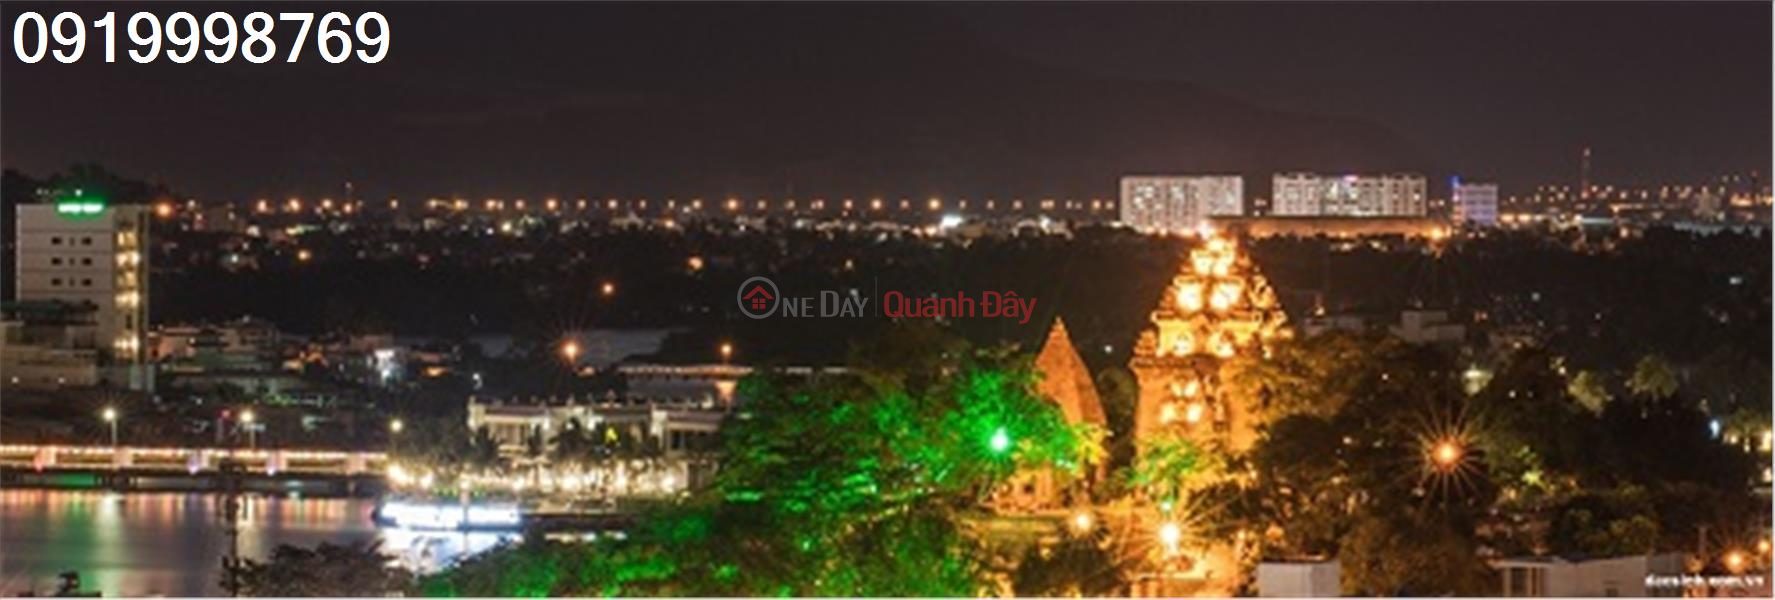 Property Search Vietnam | OneDay | Nhà ở, Niêm yết bán | Chuyển nhượng căn hộ thương mại chung cư Bình Phú (Căn góc) tp Nha Trang